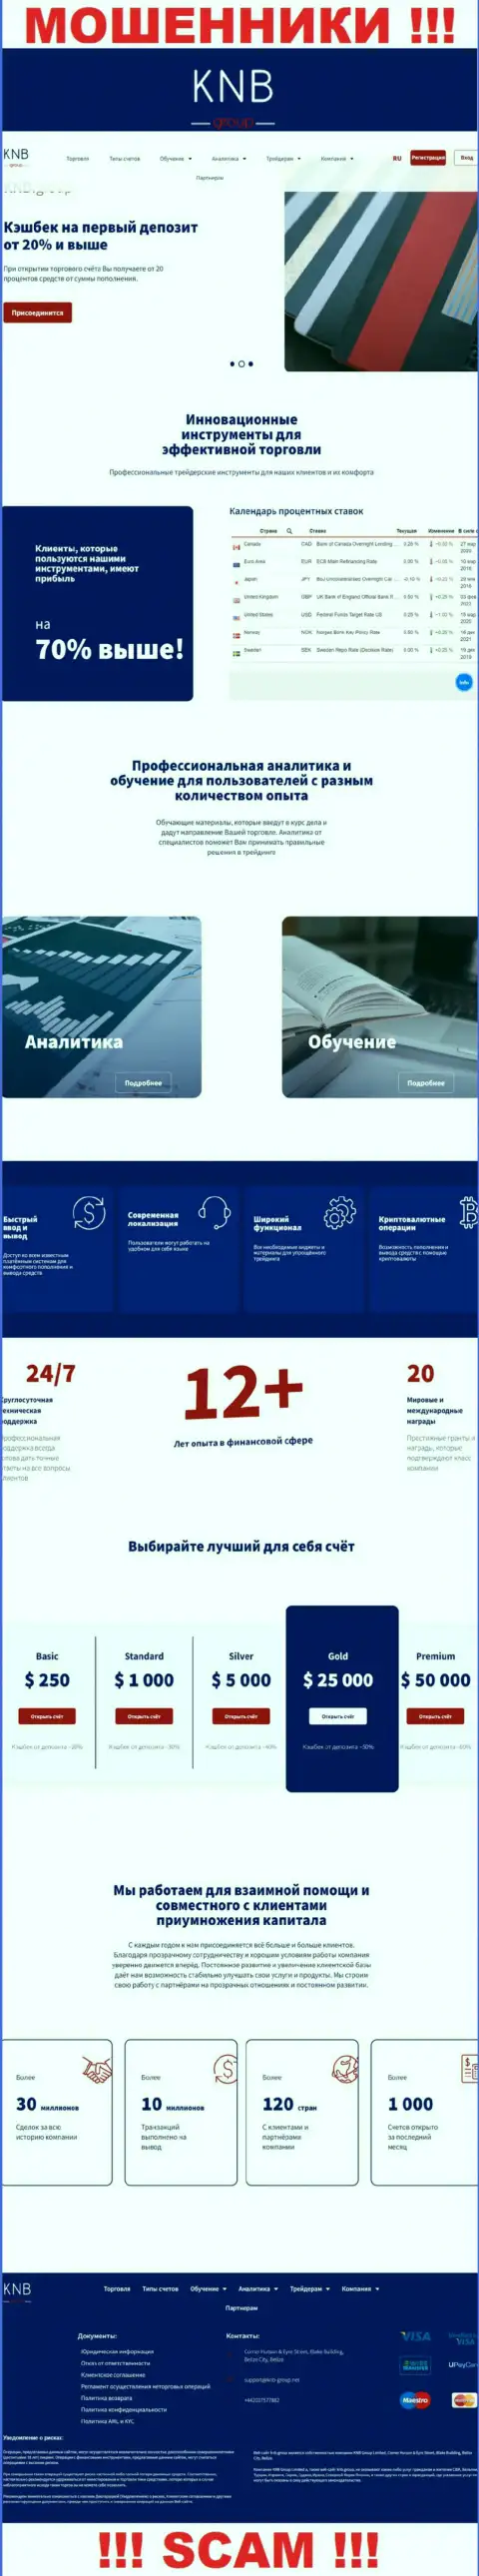 Обзор официального онлайн-сервиса мошенников КНБ-Групп Нет